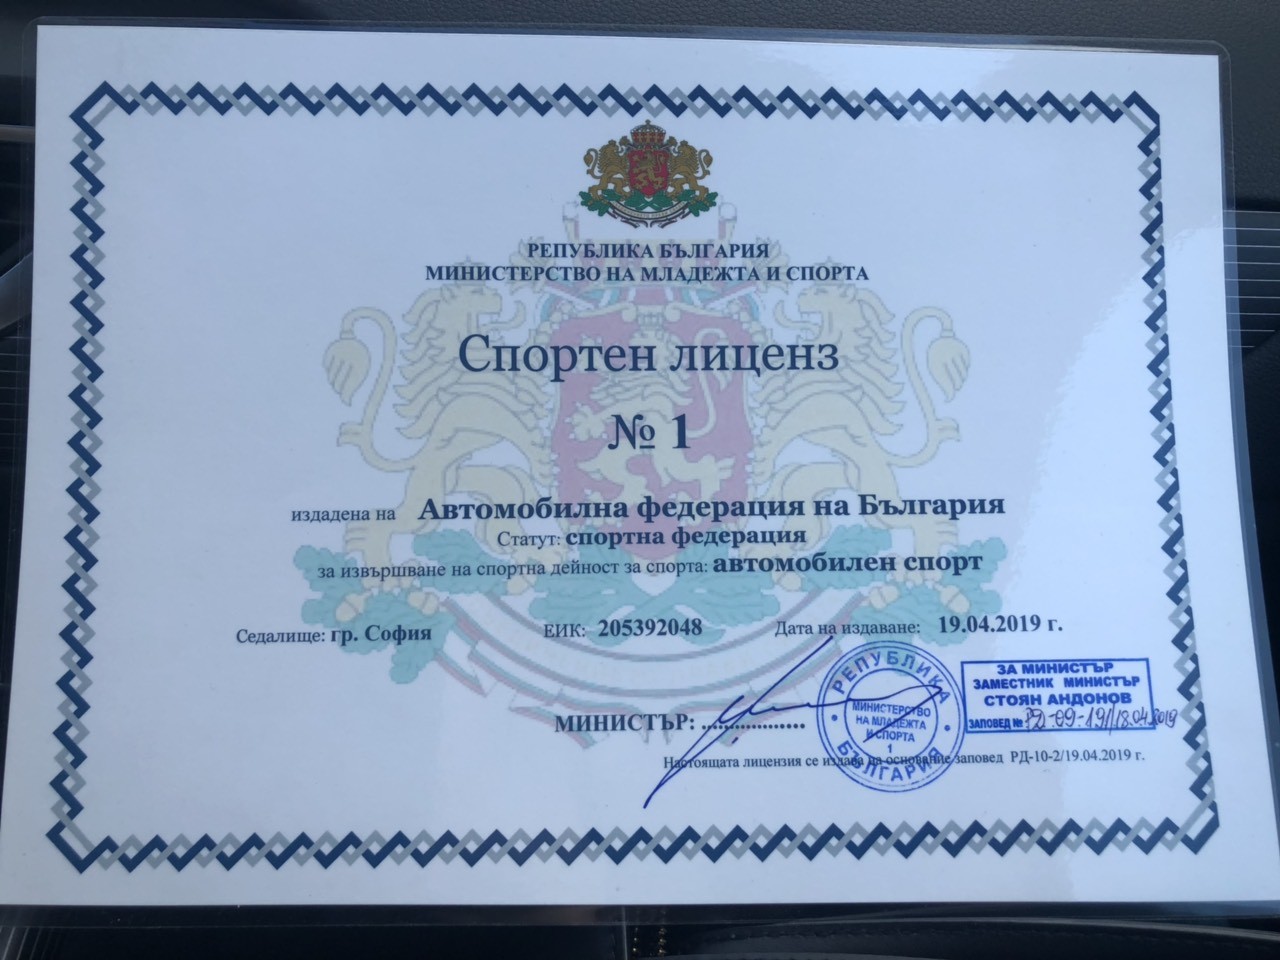 Автомобилна федерация на България - лиценз